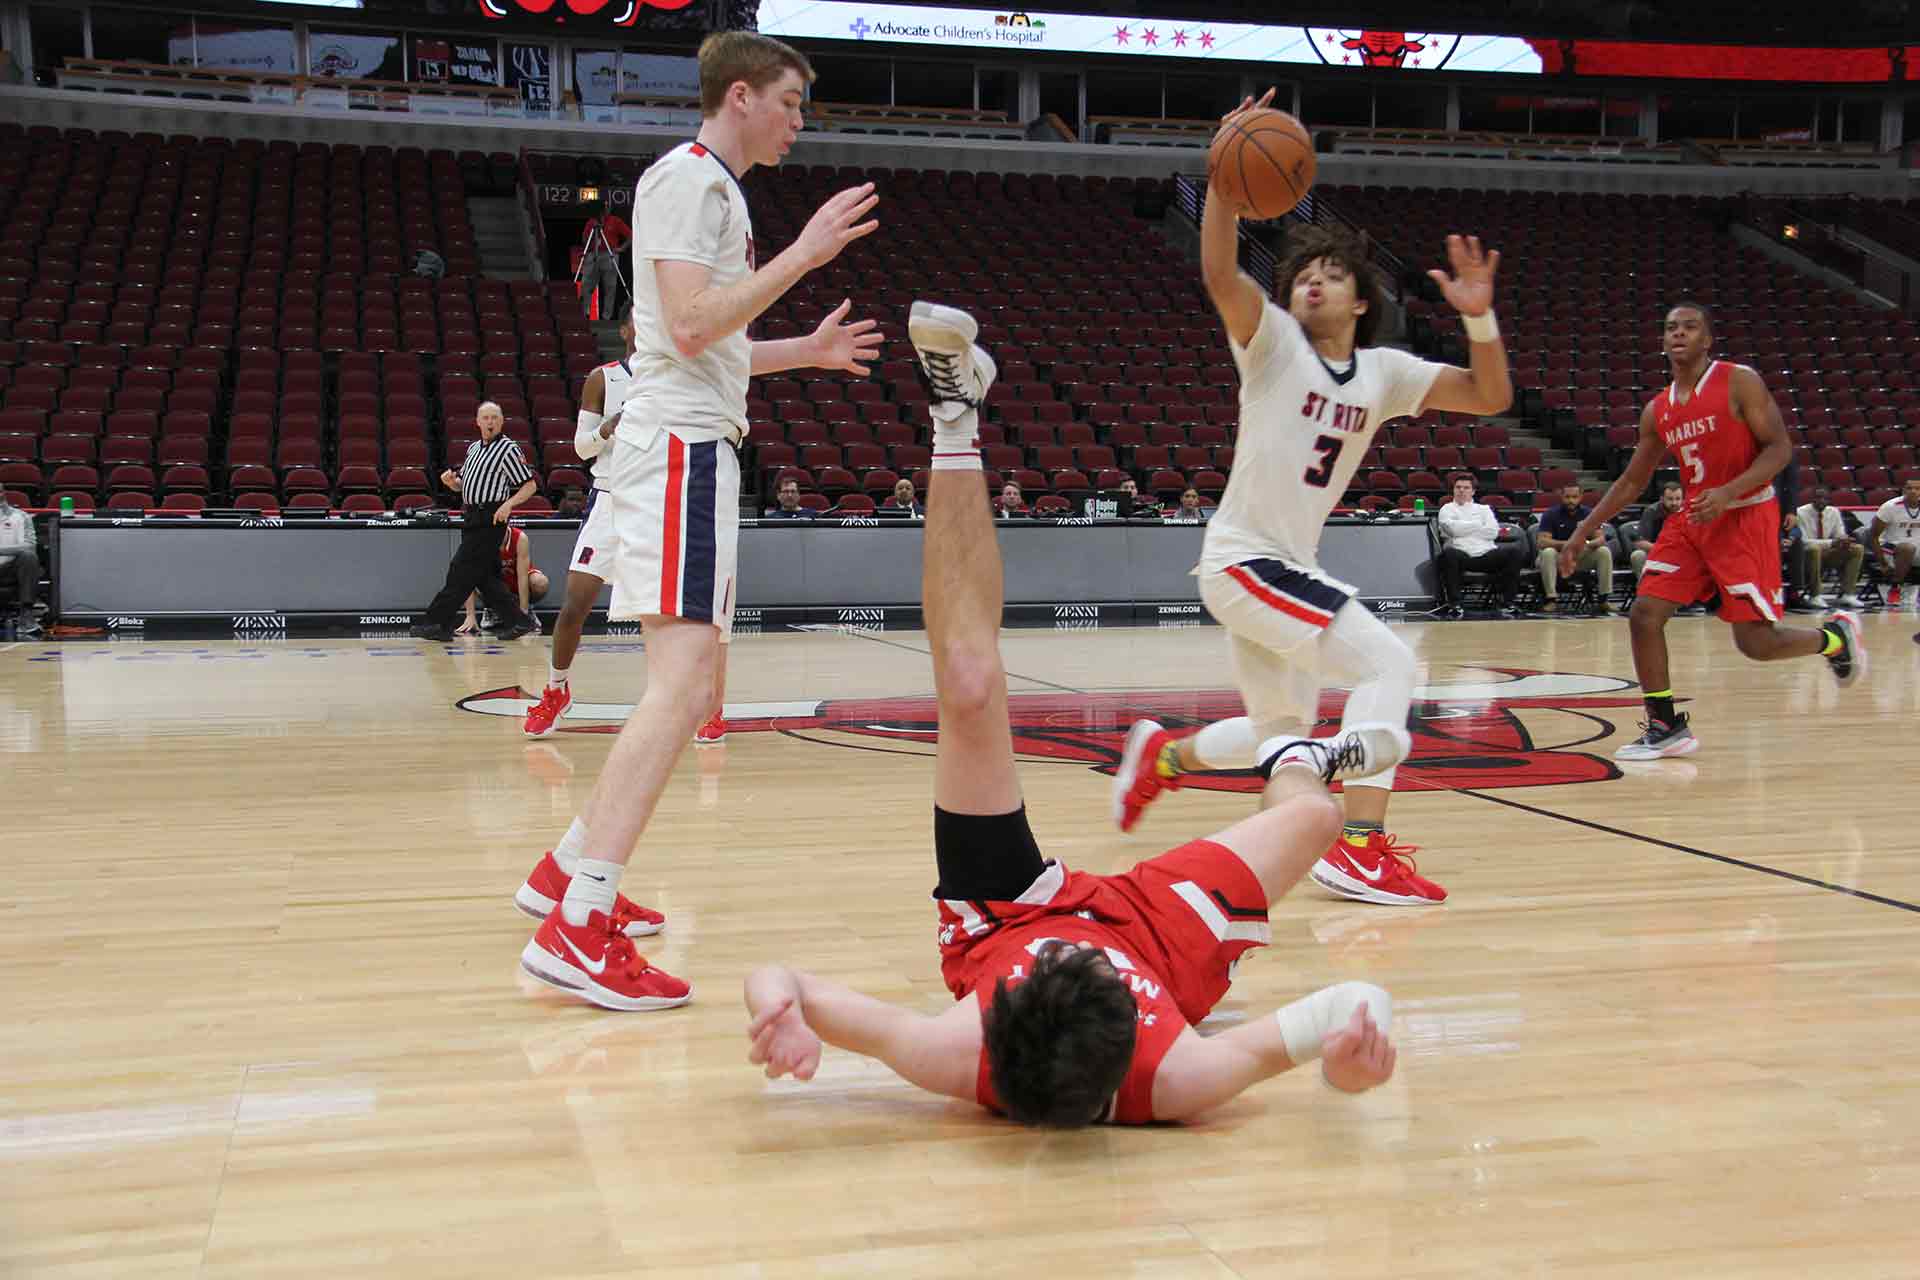 boys-basketball-vs-st-rita-player-fell-over